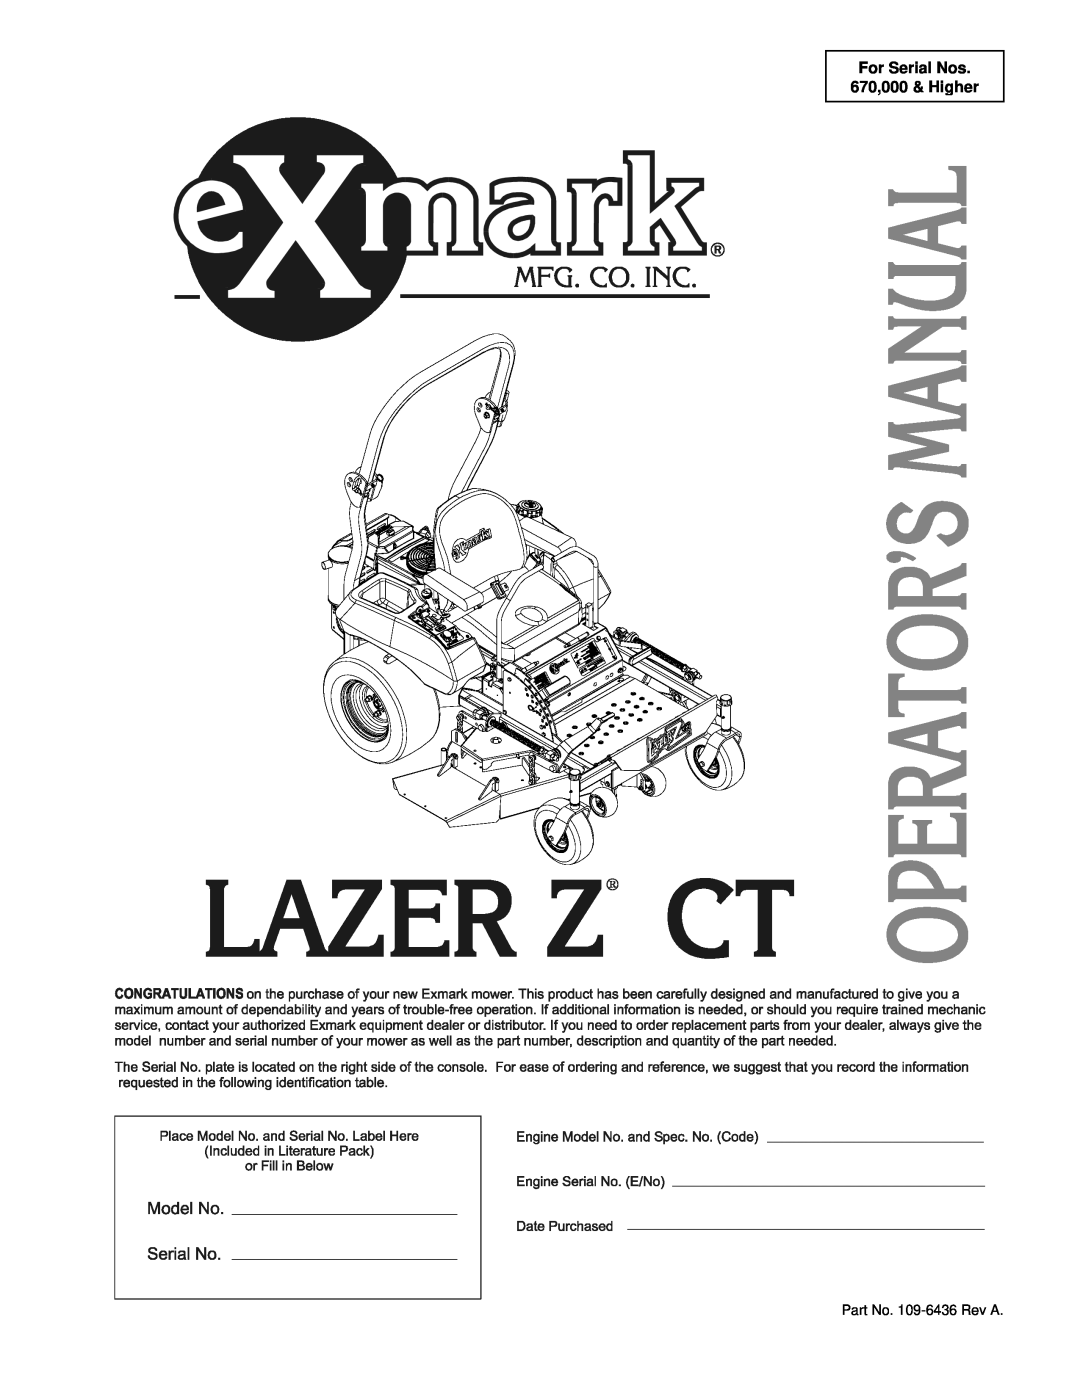 Exmark Lazer Z CT manual For Serial Nos 670,000 & Higher, Part No. 109-6436Rev A 